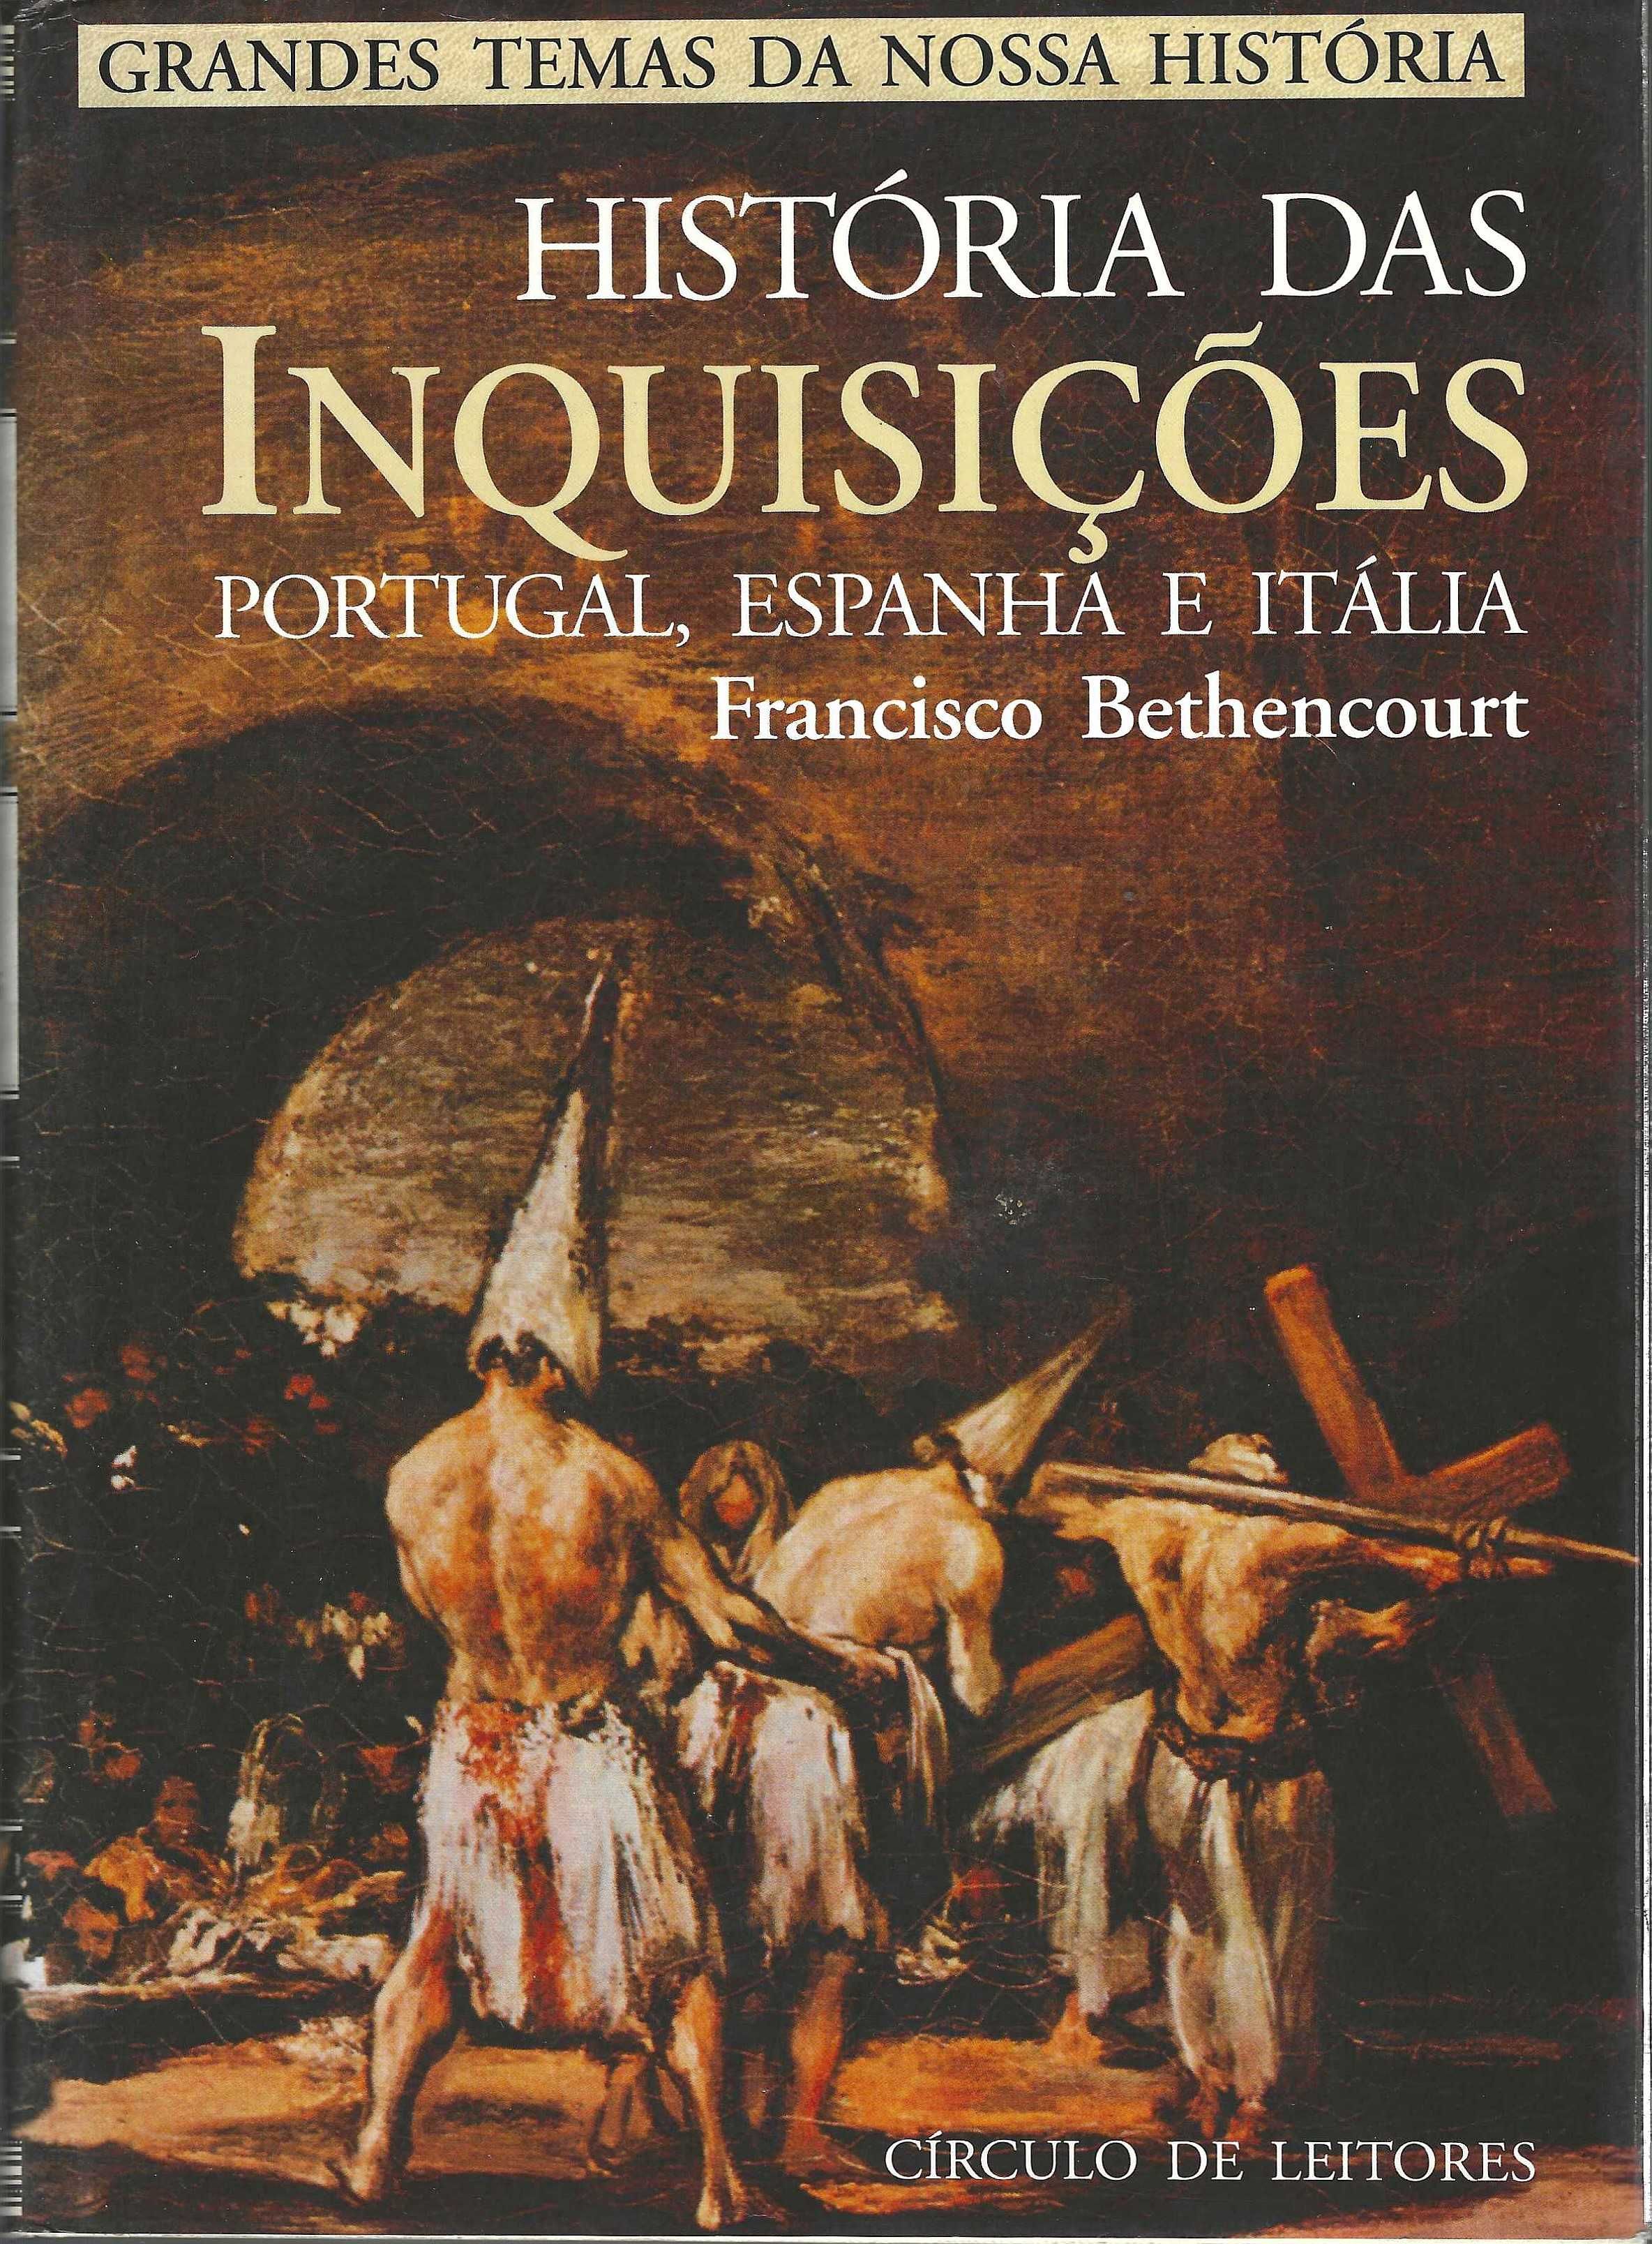 Círculo de Leitores - História das Inquisições